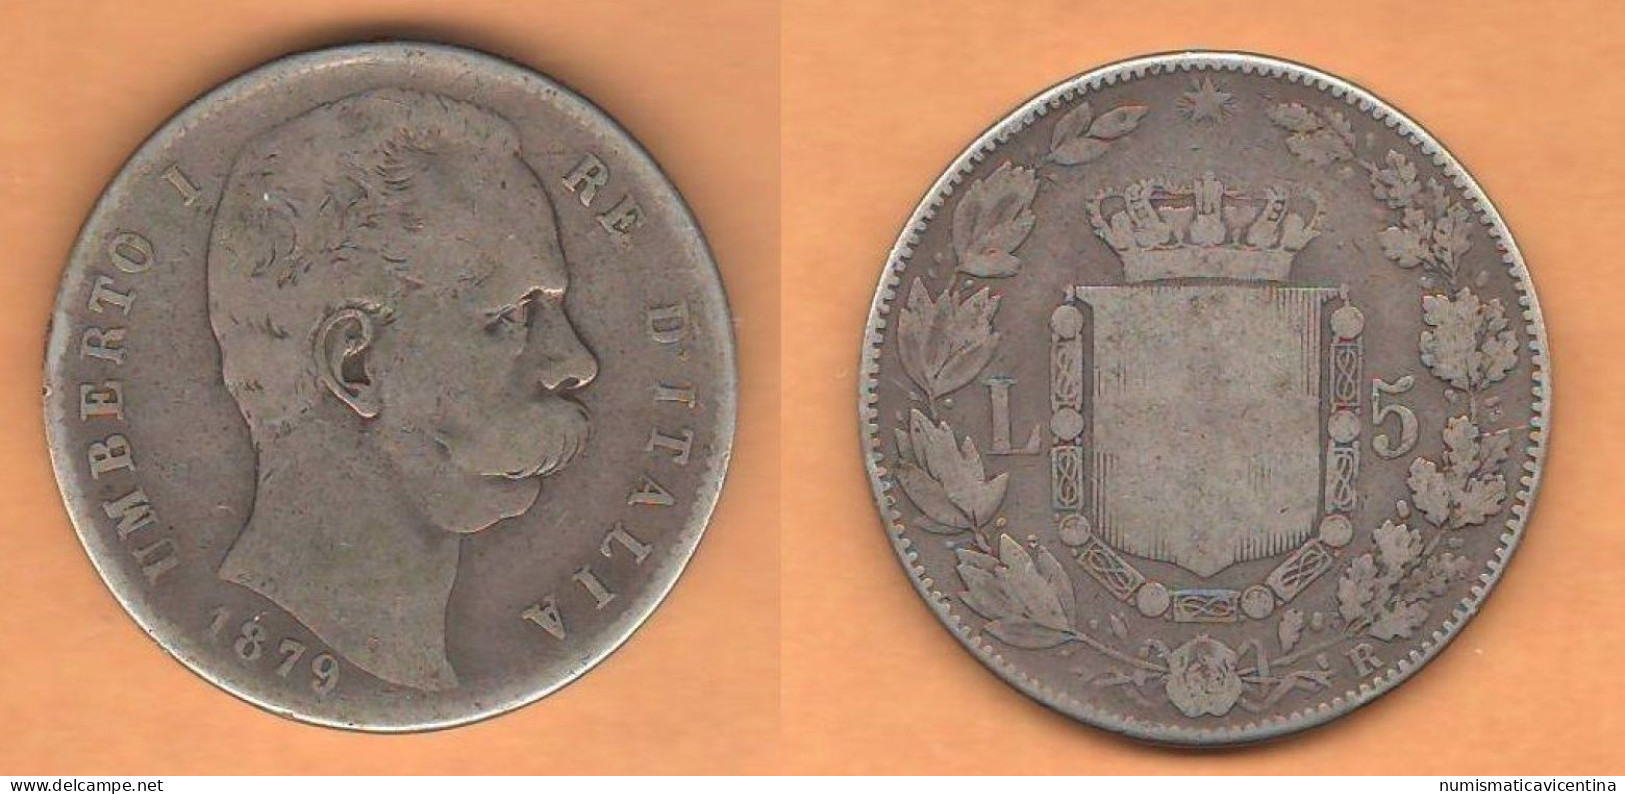 Italia 5 Lire 1879 Re Umberto I°  Italie Italy Silver Coin - 1878-1900 : Umberto I